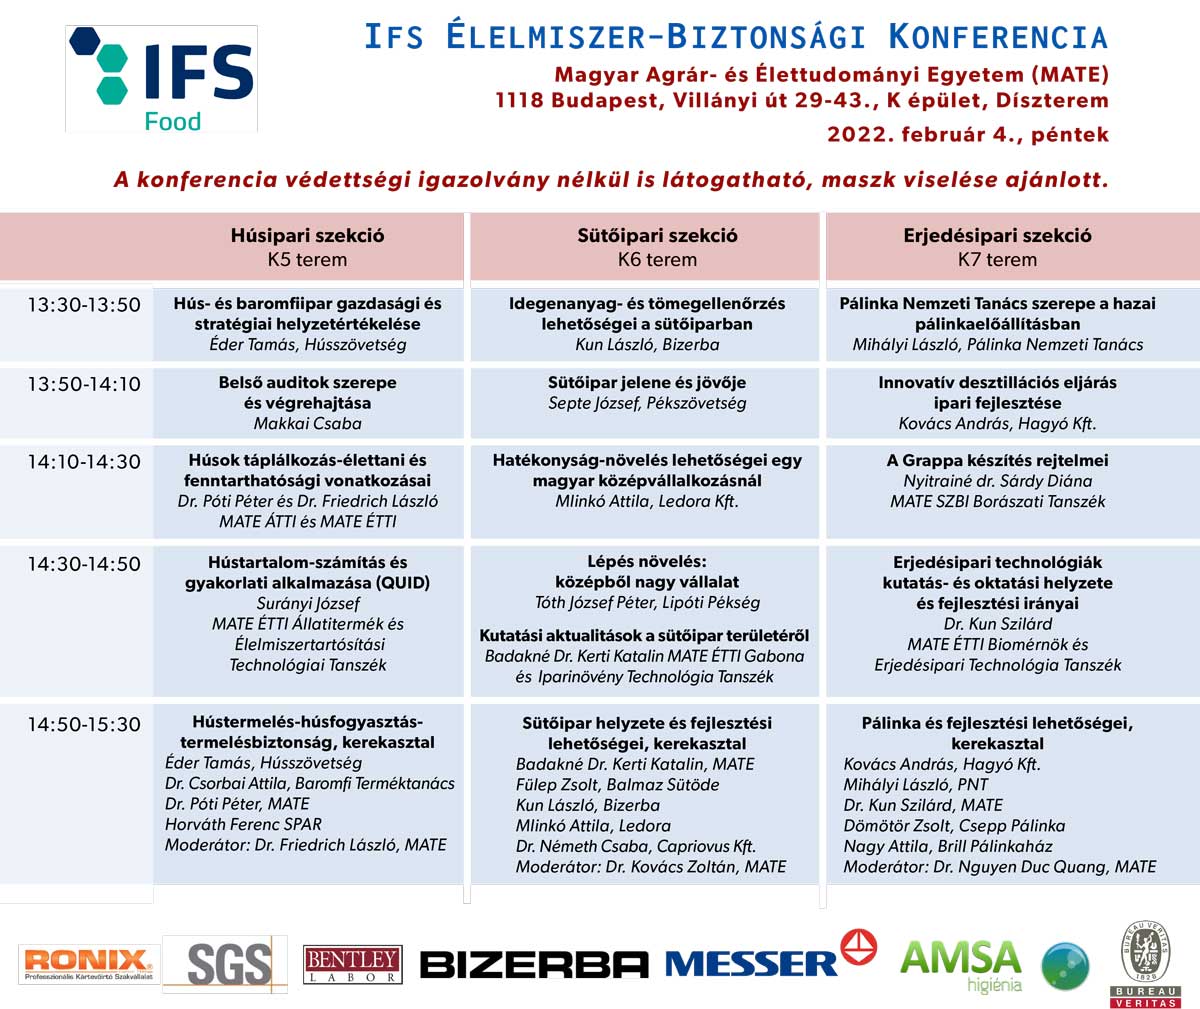 IFS elelmiszer biztonsagi konferencia program 2022 02 04 2